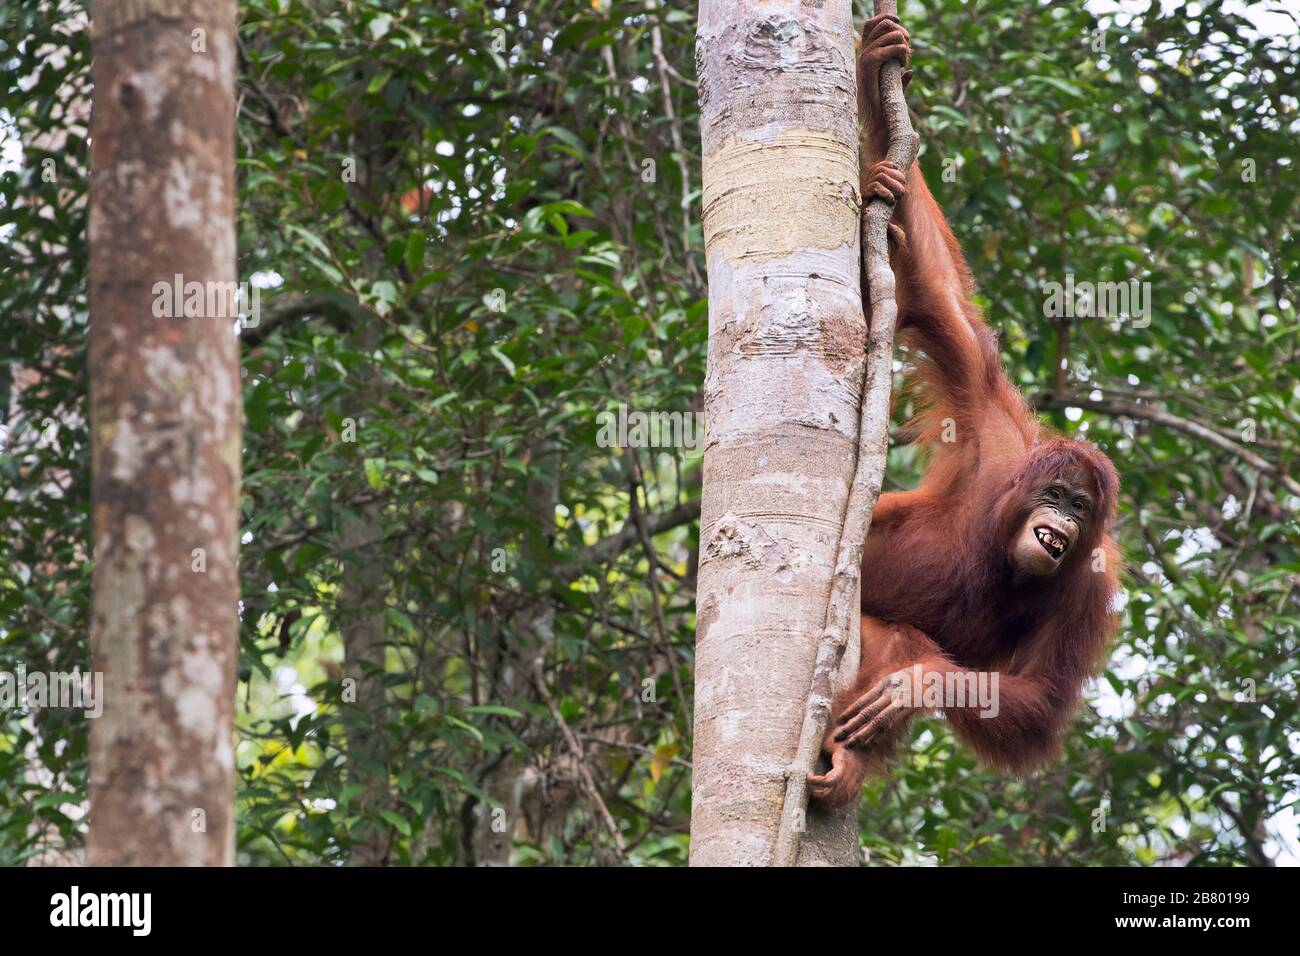 The image of  Bornean orangutan (Pongo pygmaeus) in Kalimantan, Borneo, Indonesia. Stock Photo